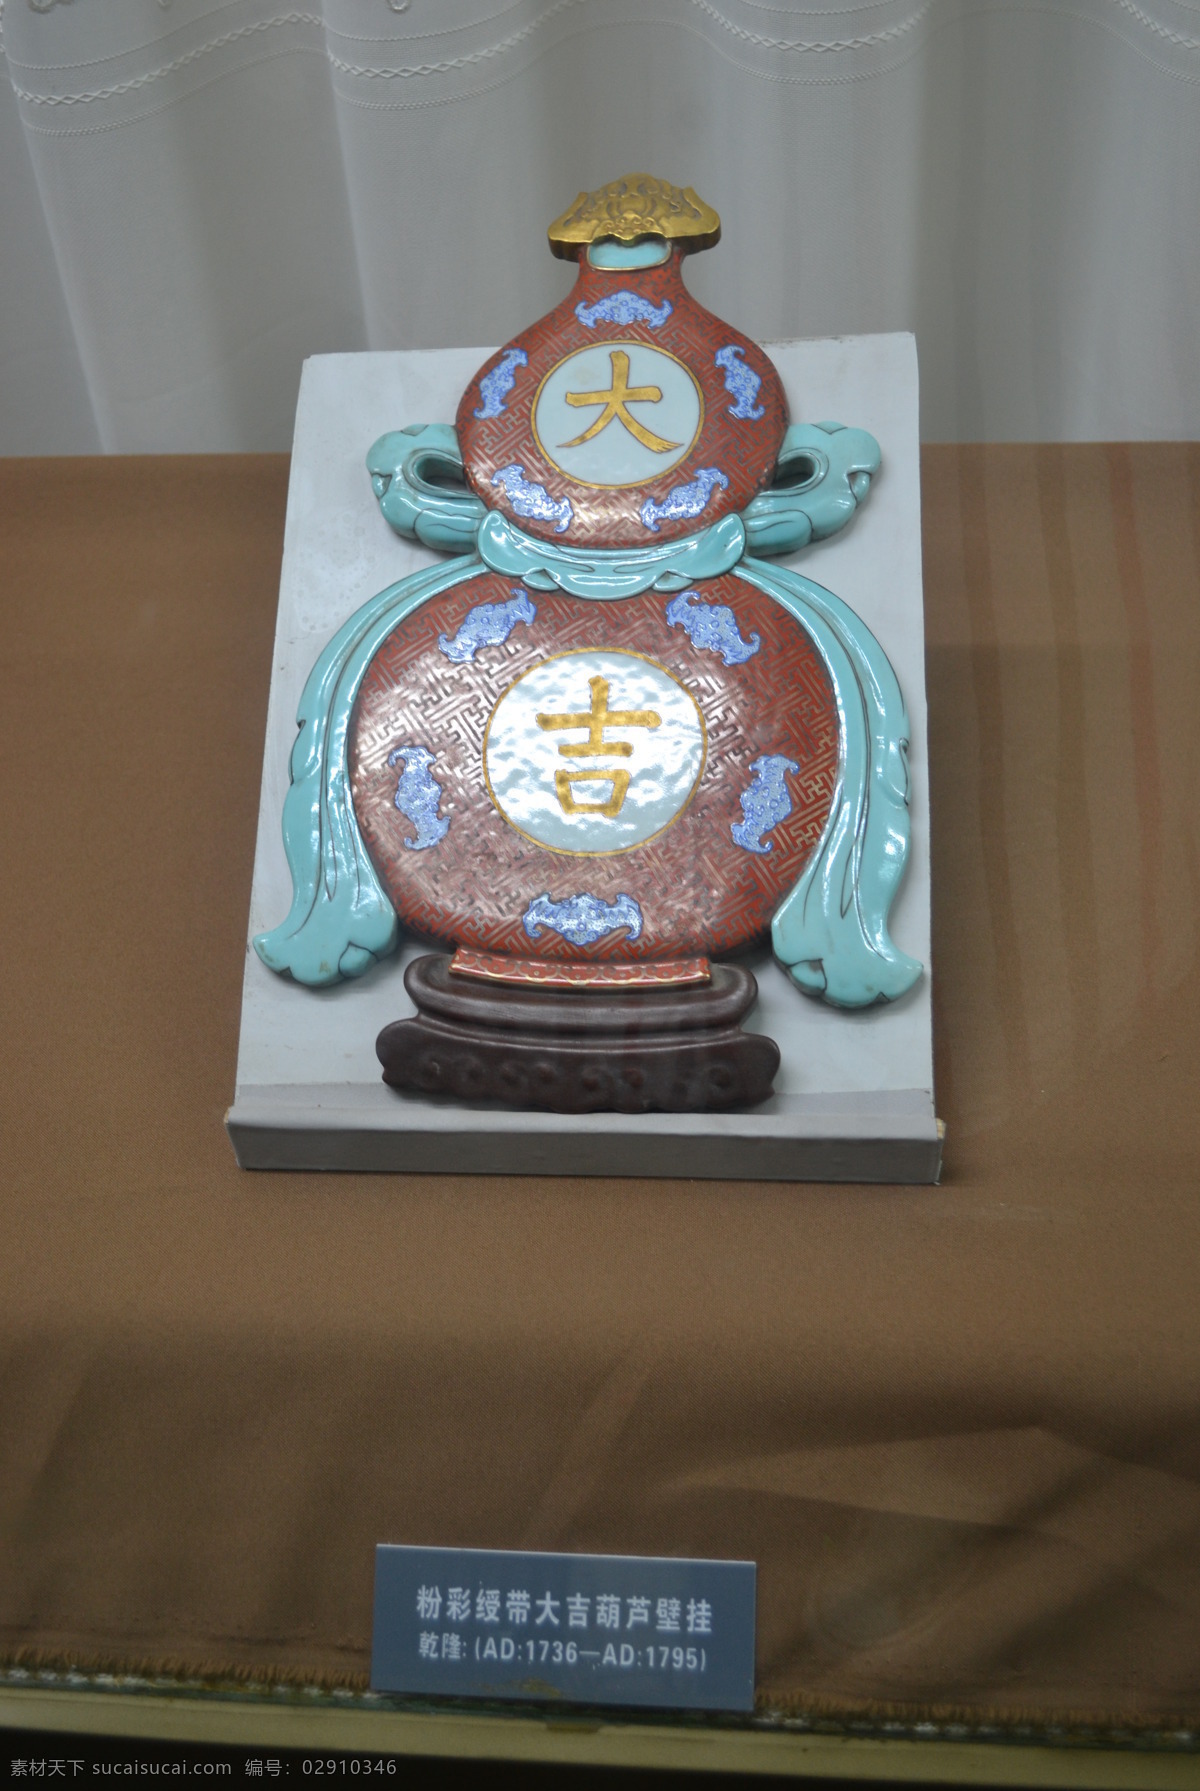 粉彩 绶带 大吉 葫芦 壁挂 景德镇 陶器 瓷器 陶瓷器 系列 传统文化 文化艺术